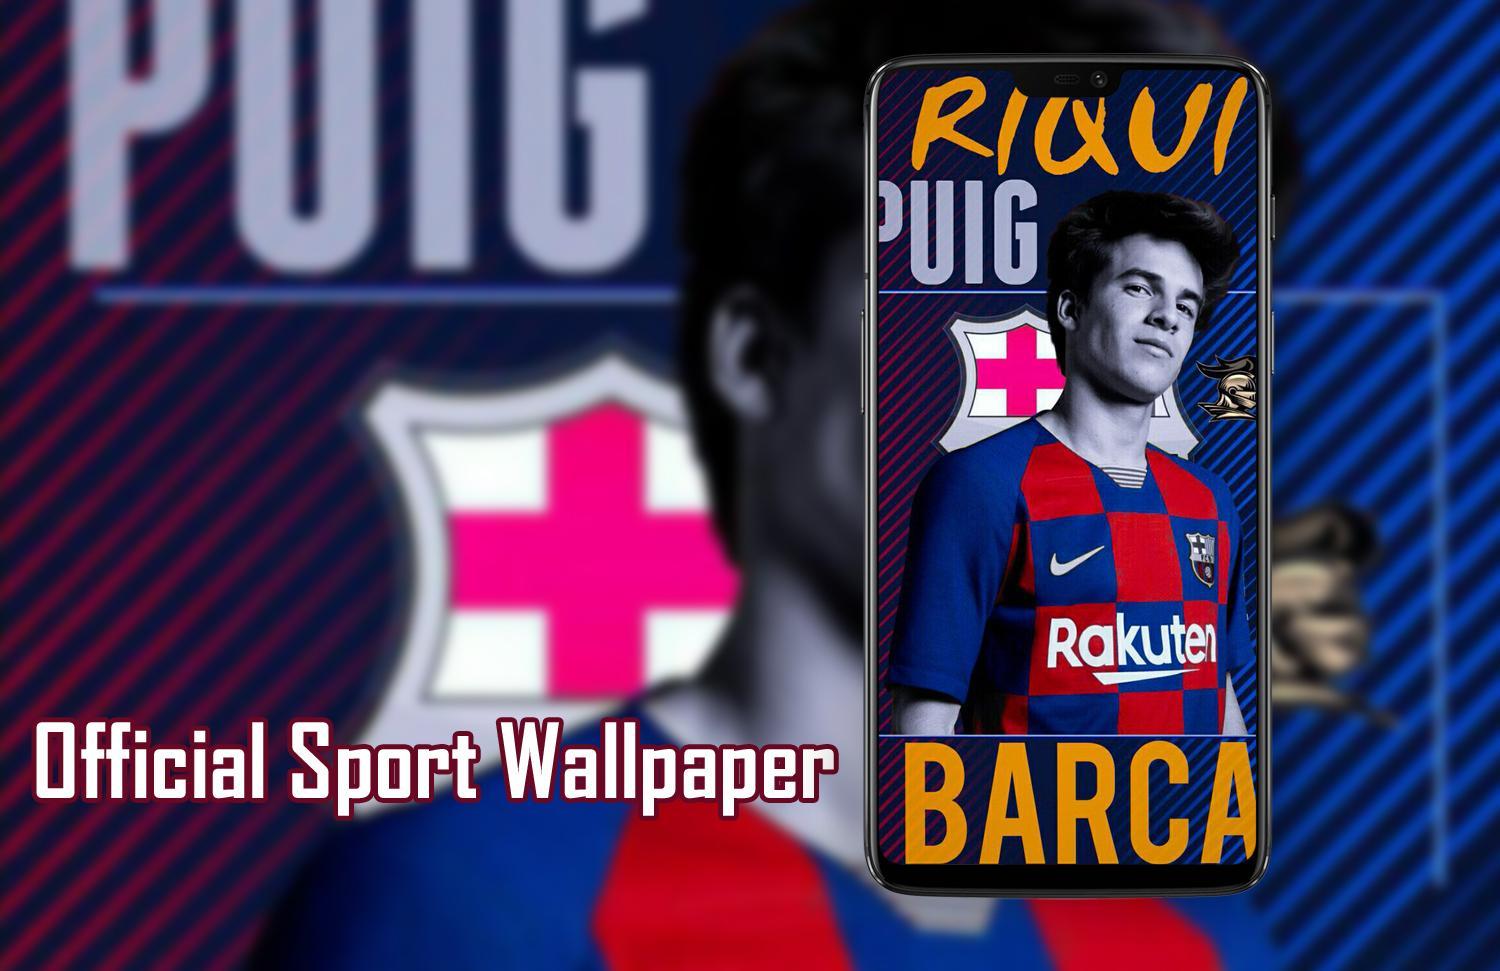 Riqui Puig Wallpaper Hd For Android Apk Download